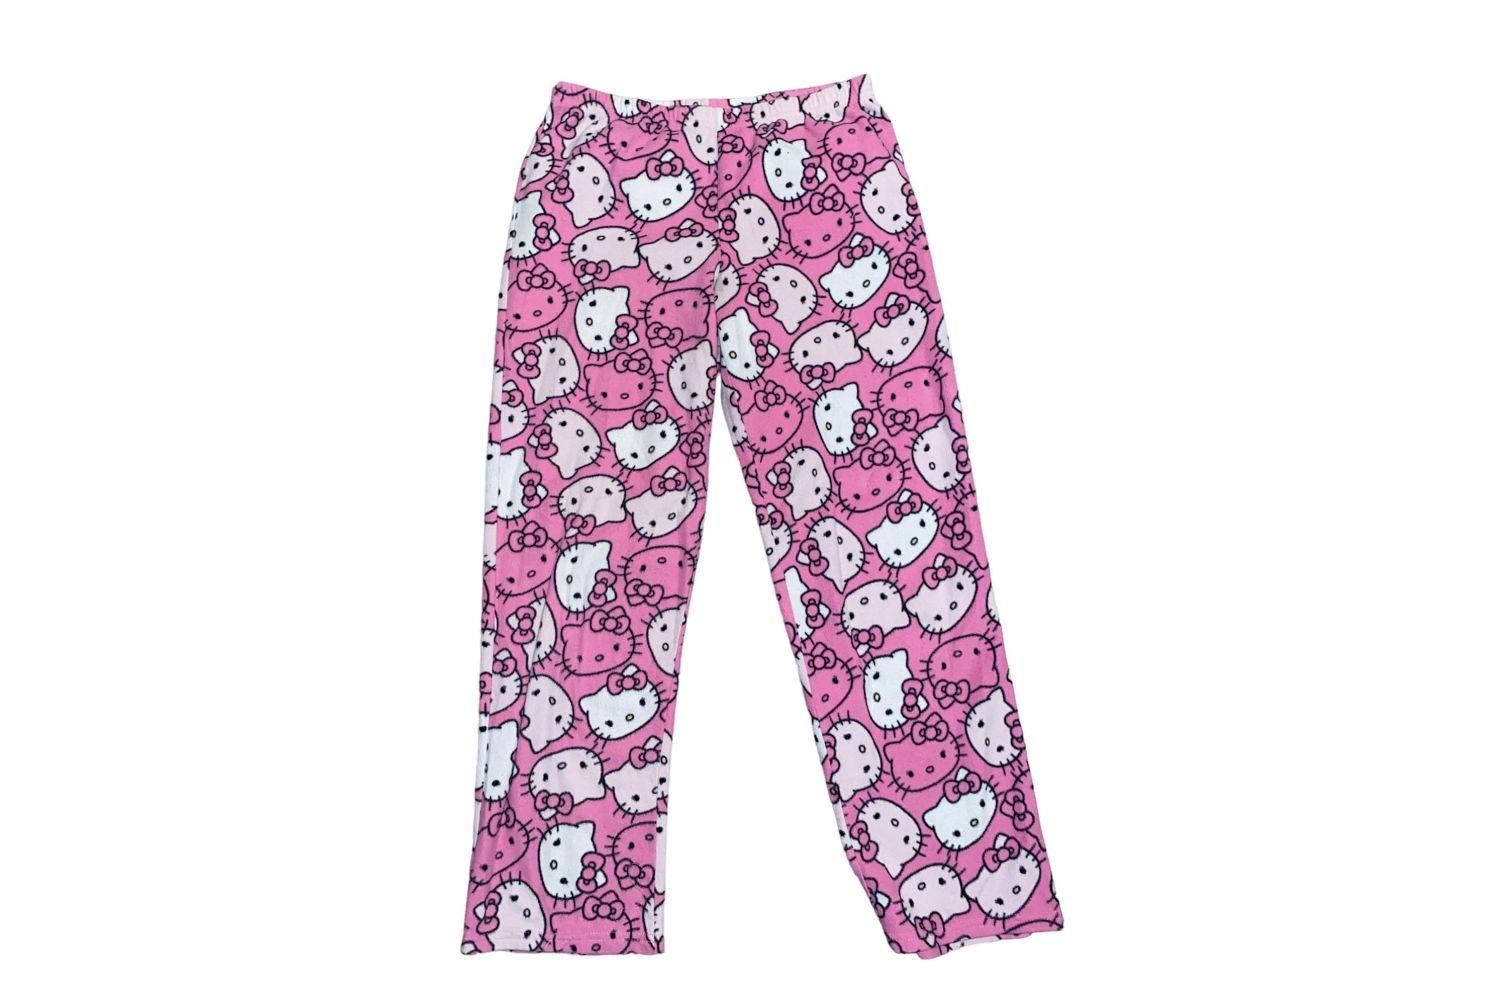 HelloKitty Pajama Pants Fairy Flannel Autumn Warm unisex pants Pant Fashion  | eBay